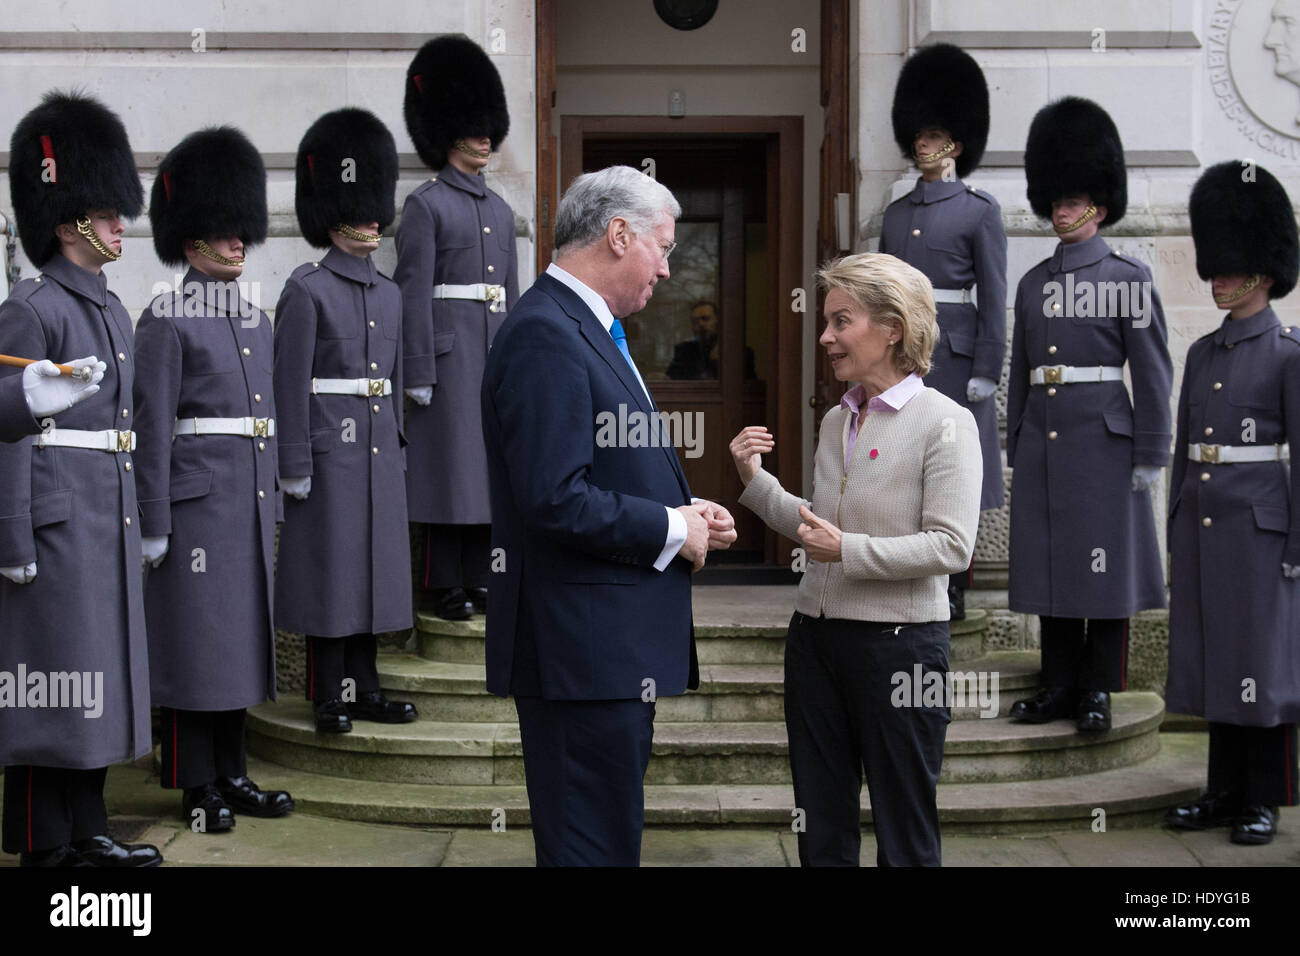 Le Secrétaire à la défense, Sir Michael Fallon (gauche) de l'Allemagne accueille le ministre de la défense, Ursula von der Leyen à l'extérieur de l'Office des étrangers avant d'un sommet à Londres avec les ministres de la défense de la coalition des pays qui se battent, est également connu comme Daesh, en Iraq et en Syrie. Banque D'Images